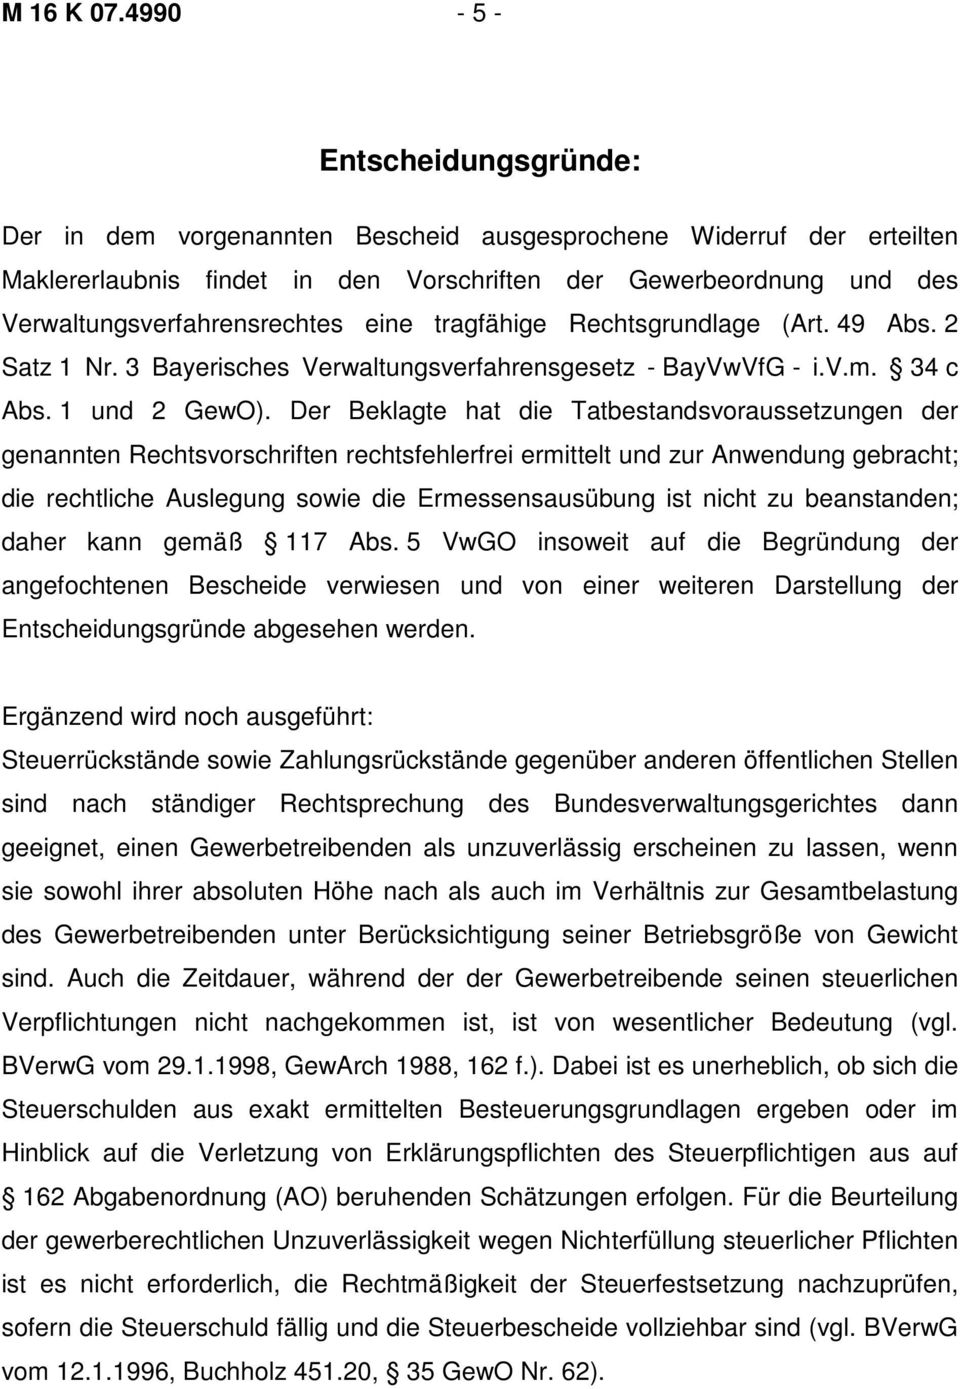 eine tragfähige Rechtsgrundlage (Art. 49 Abs. 2 Satz 1 Nr. 3 Bayerisches Verwaltungsverfahrensgesetz - BayVwVfG - i.v.m. 34 c Abs. 1 und 2 GewO).